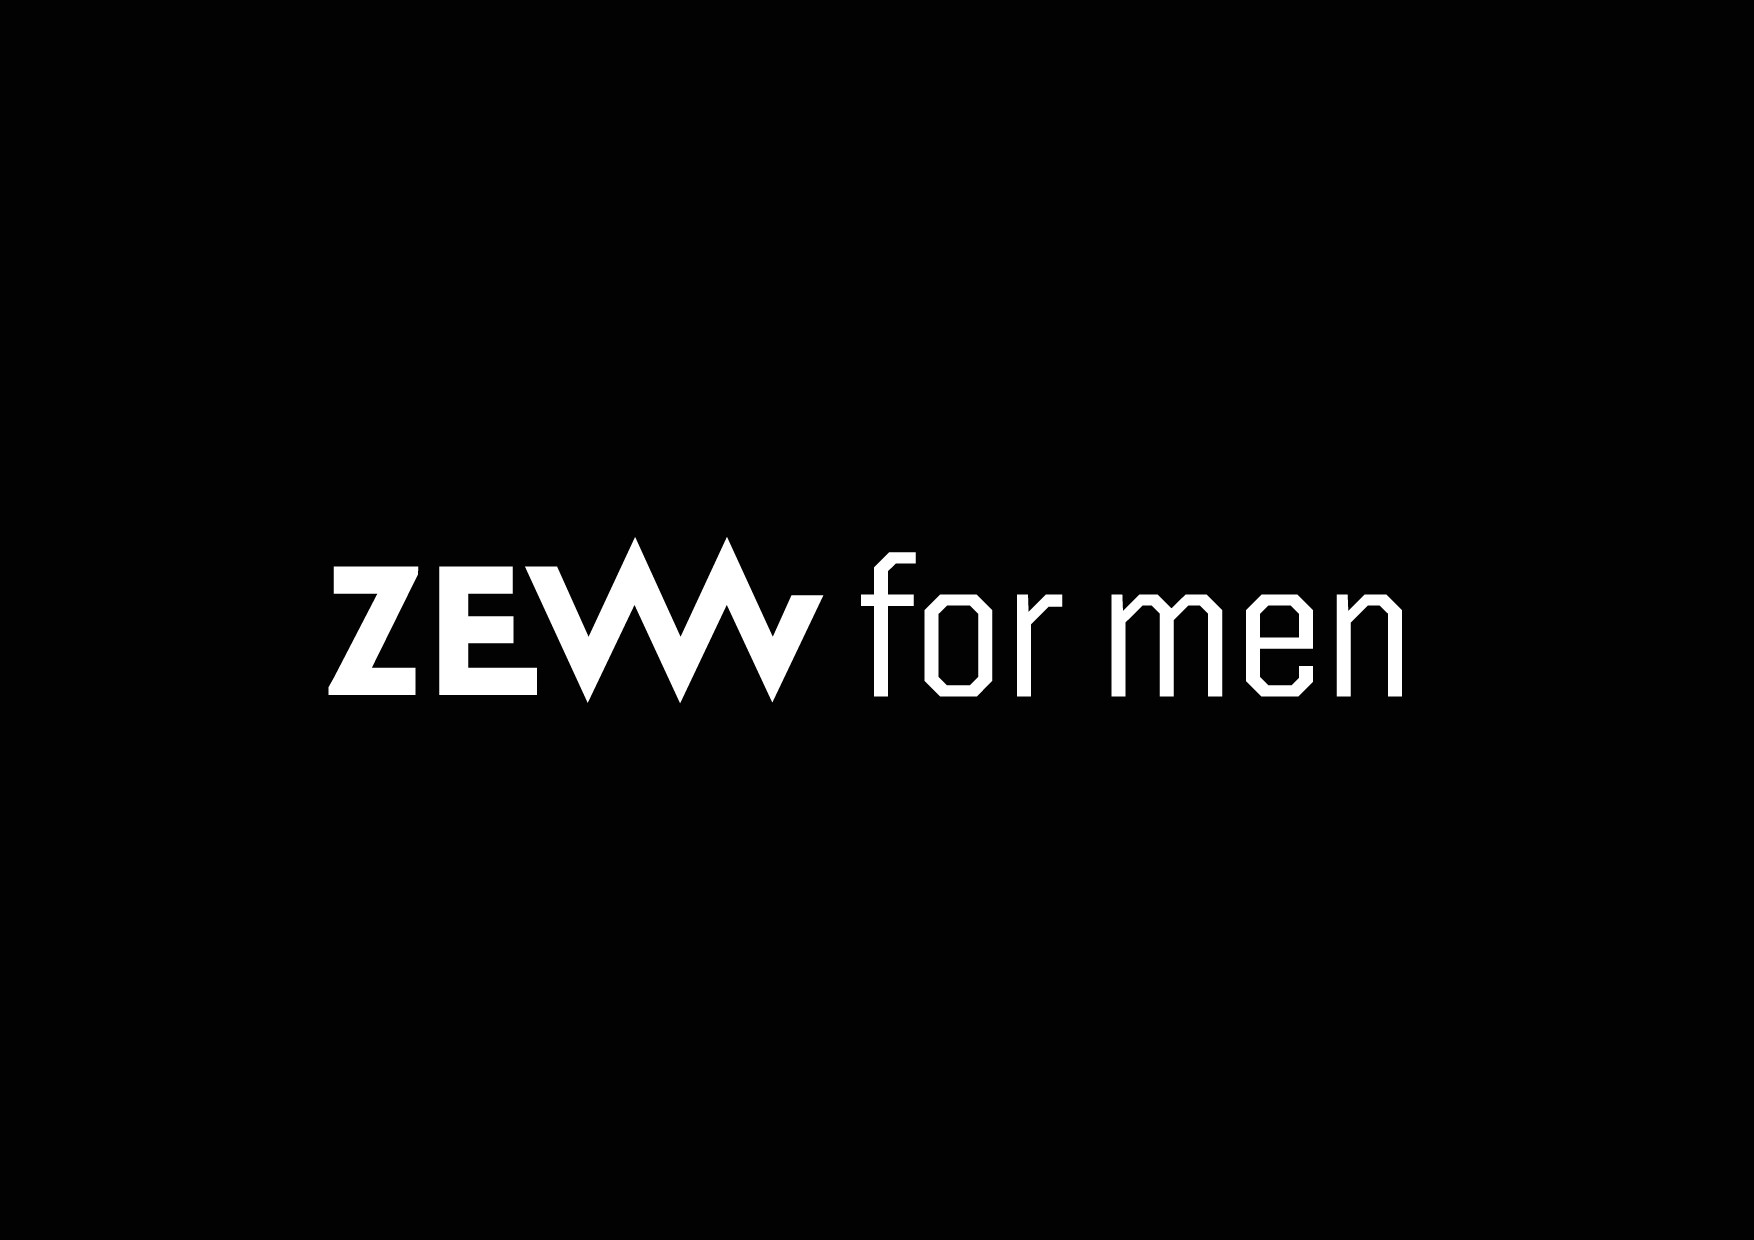 ZEW FOR MEN